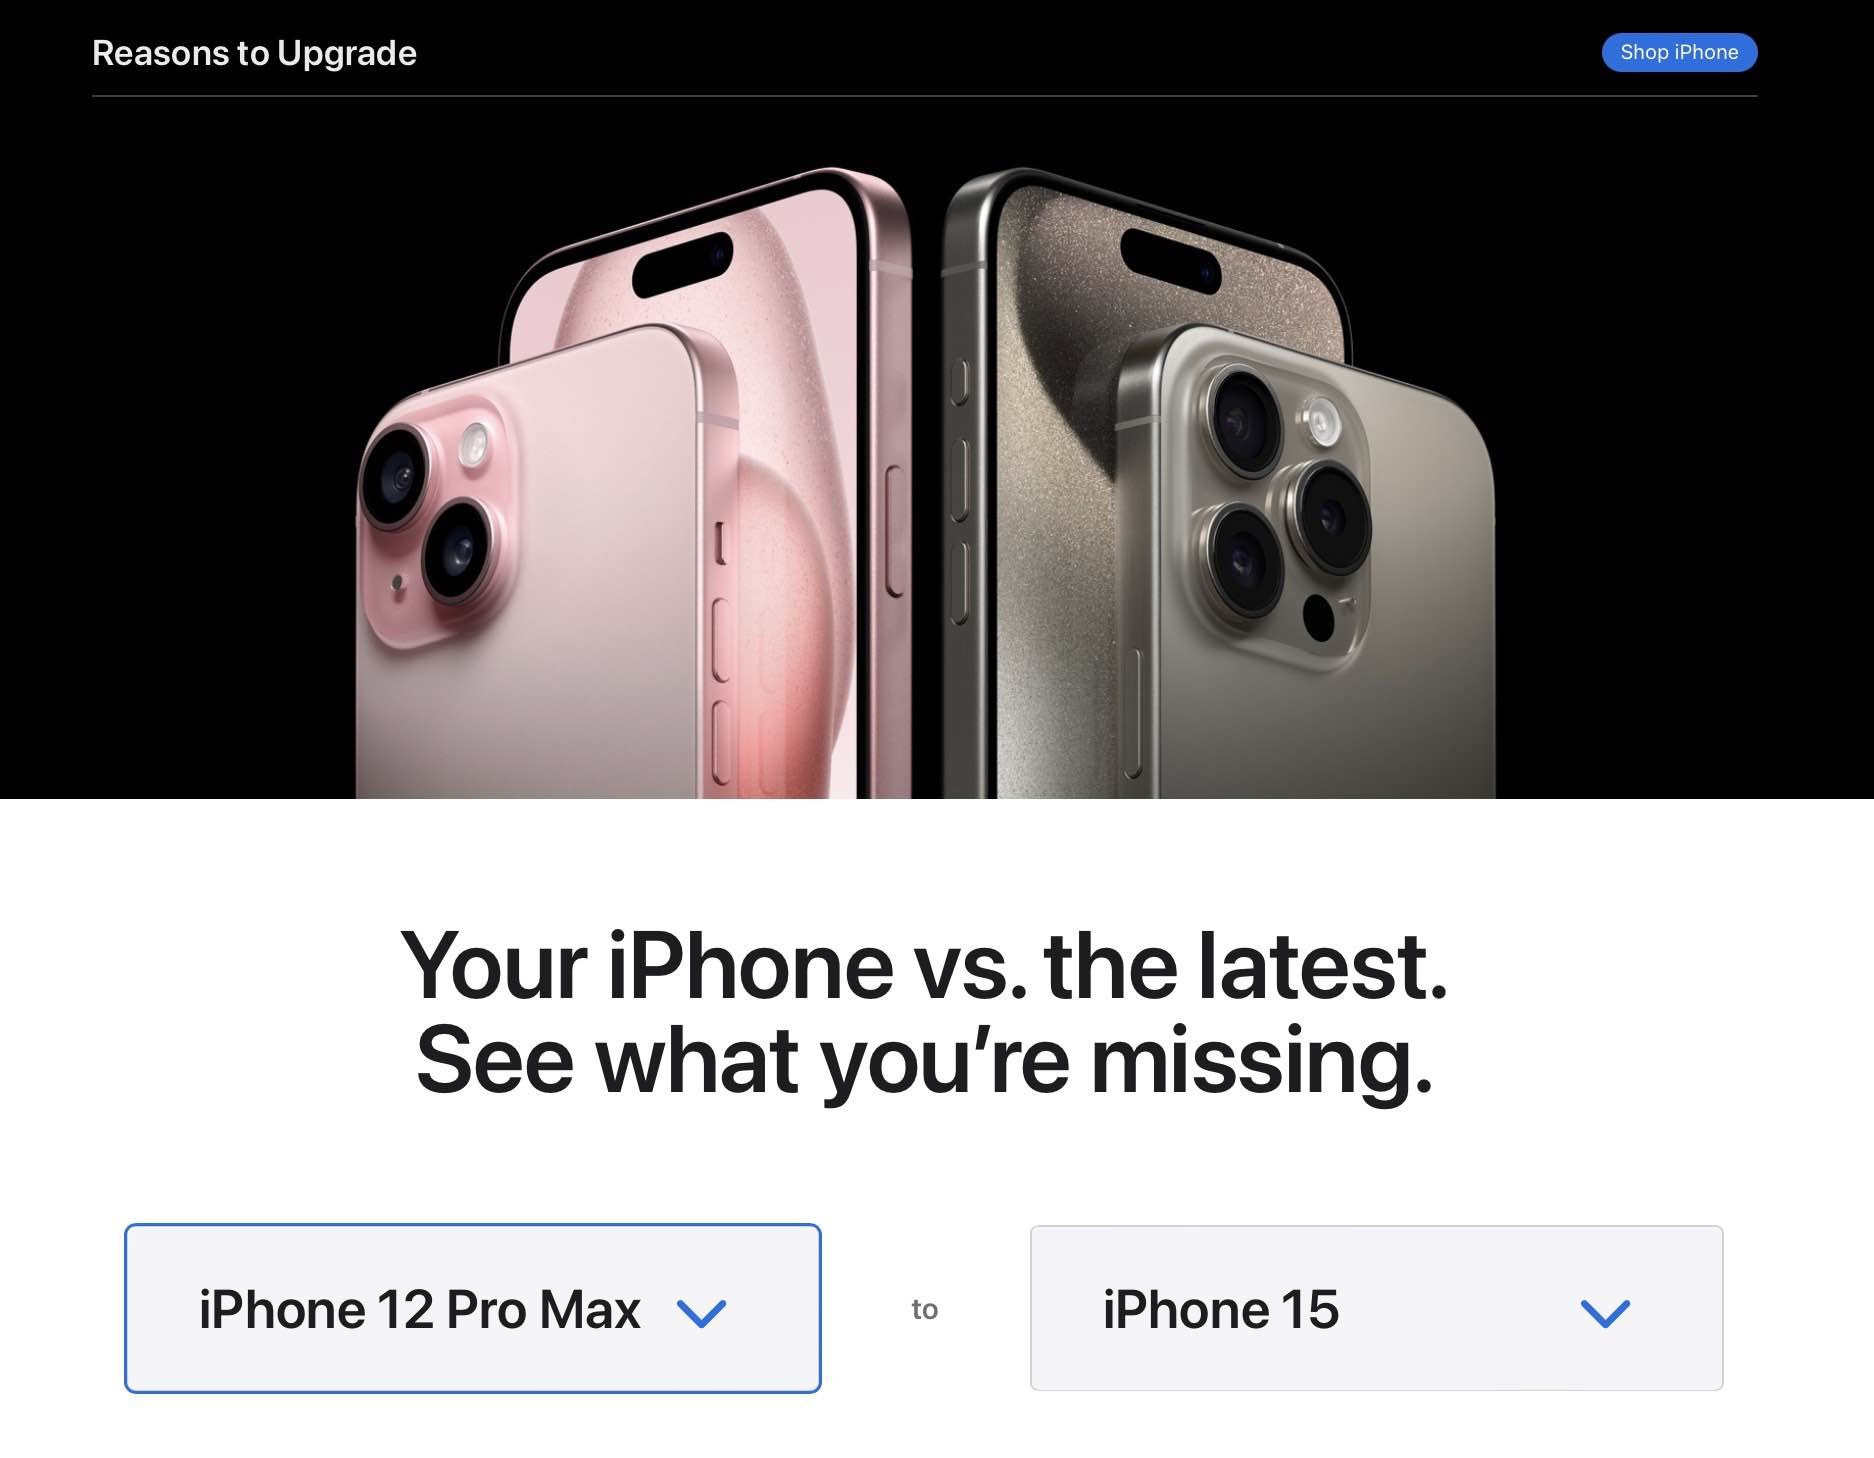 Apple wyjaśnia, dlaczego warto kupić iPhone 15 | iPhone 15 Pro ciekawostki iphone 15 pro, iPhone 15, dlaczego warto kupić iPhone 15, Apple  Firma Apple zaktualizowała swoją stronę internetową, dodając nową sekcję, która wyjaśnia dlaczego warto kupić iPhone 15 | 15 Pro. Jak działa? strona 1